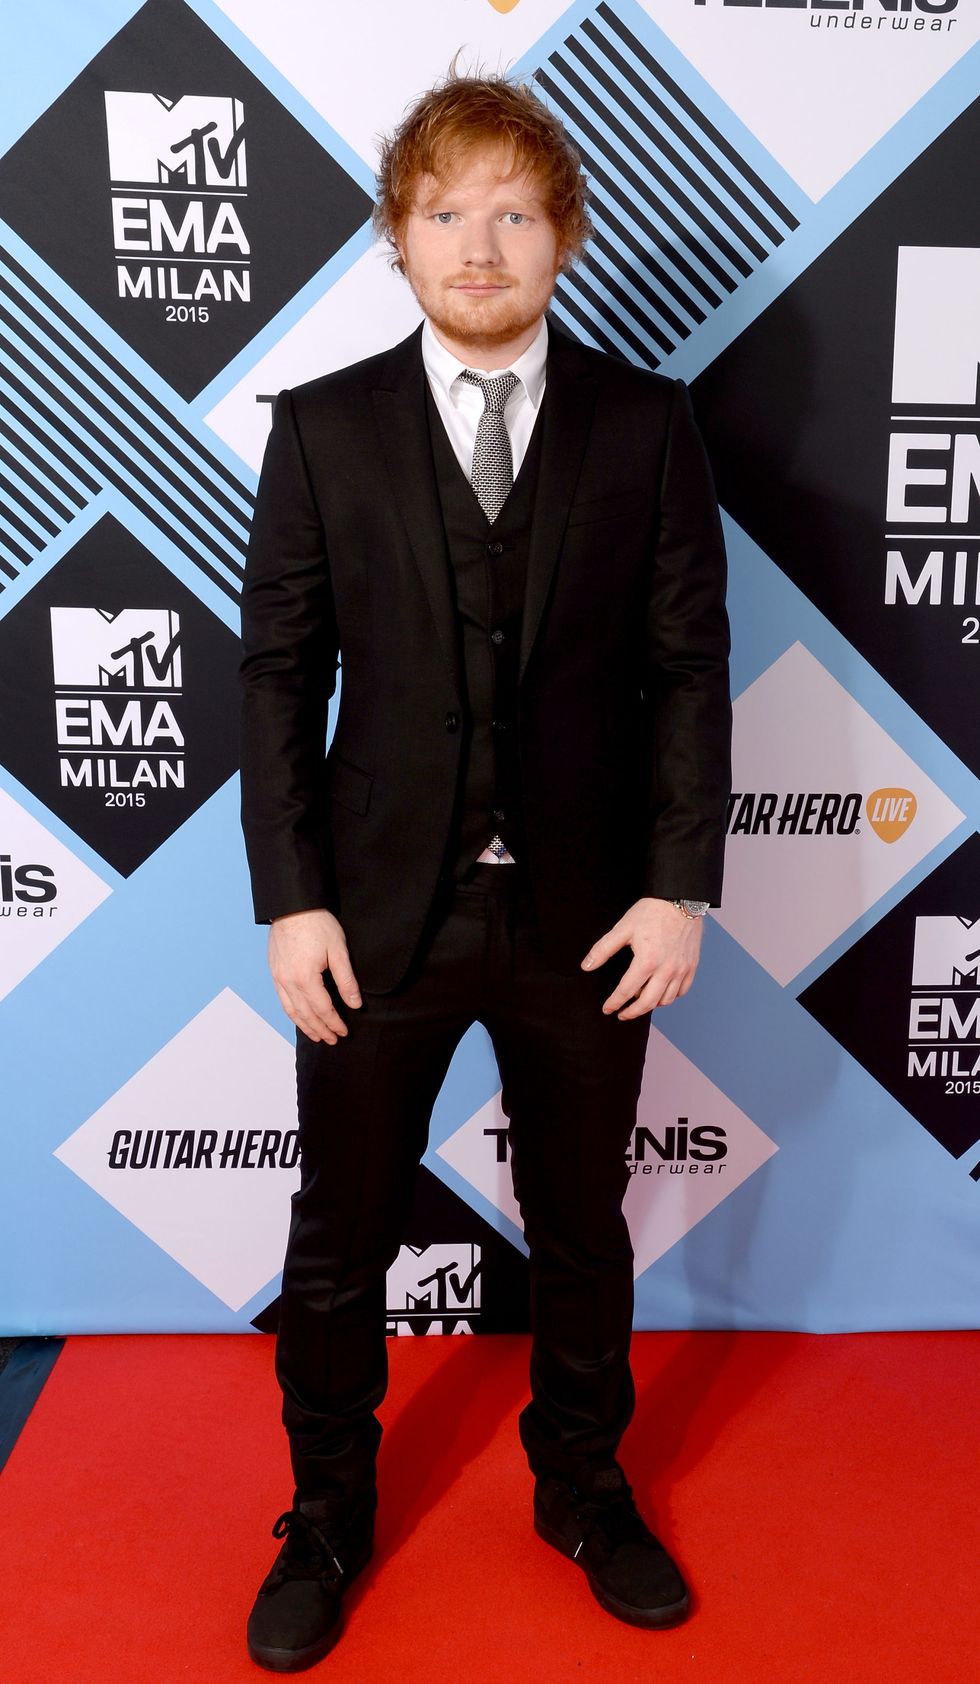 MTV EMAS 2015 red carpet